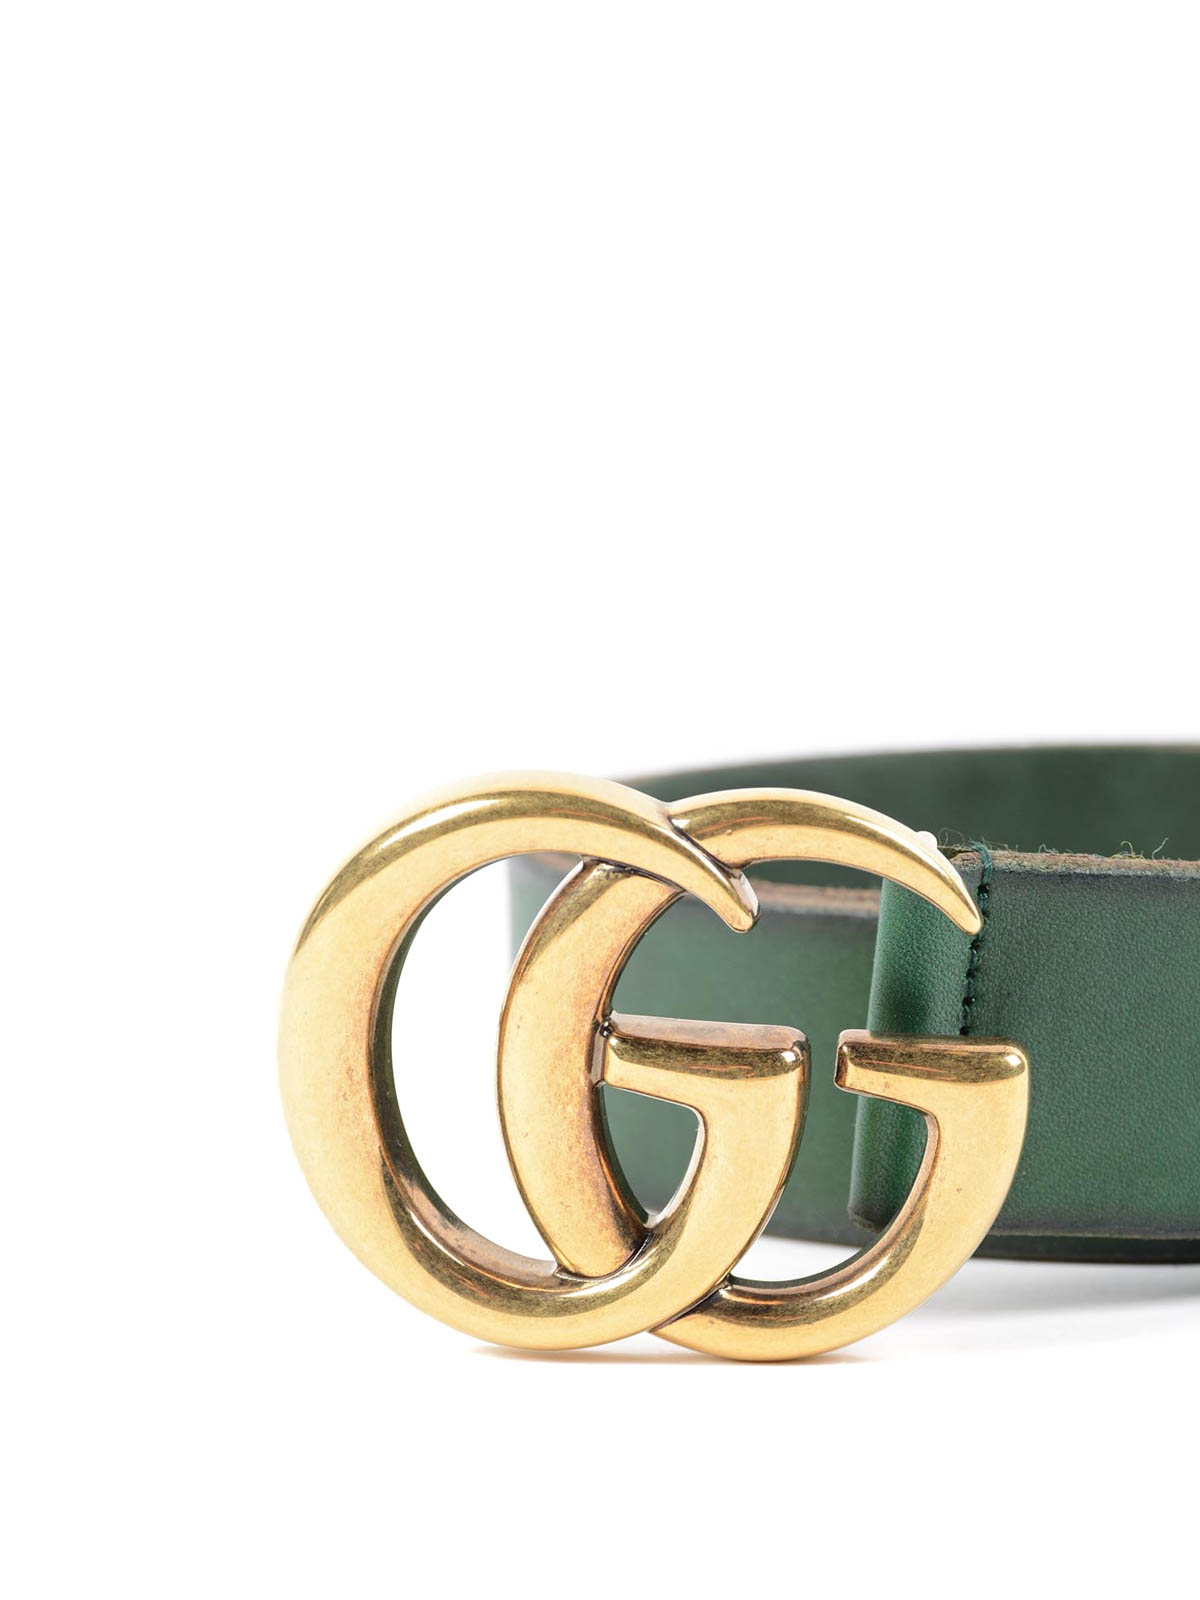 Gucci - Cinturón Verde Para Hombre - 406831CVE0T3020